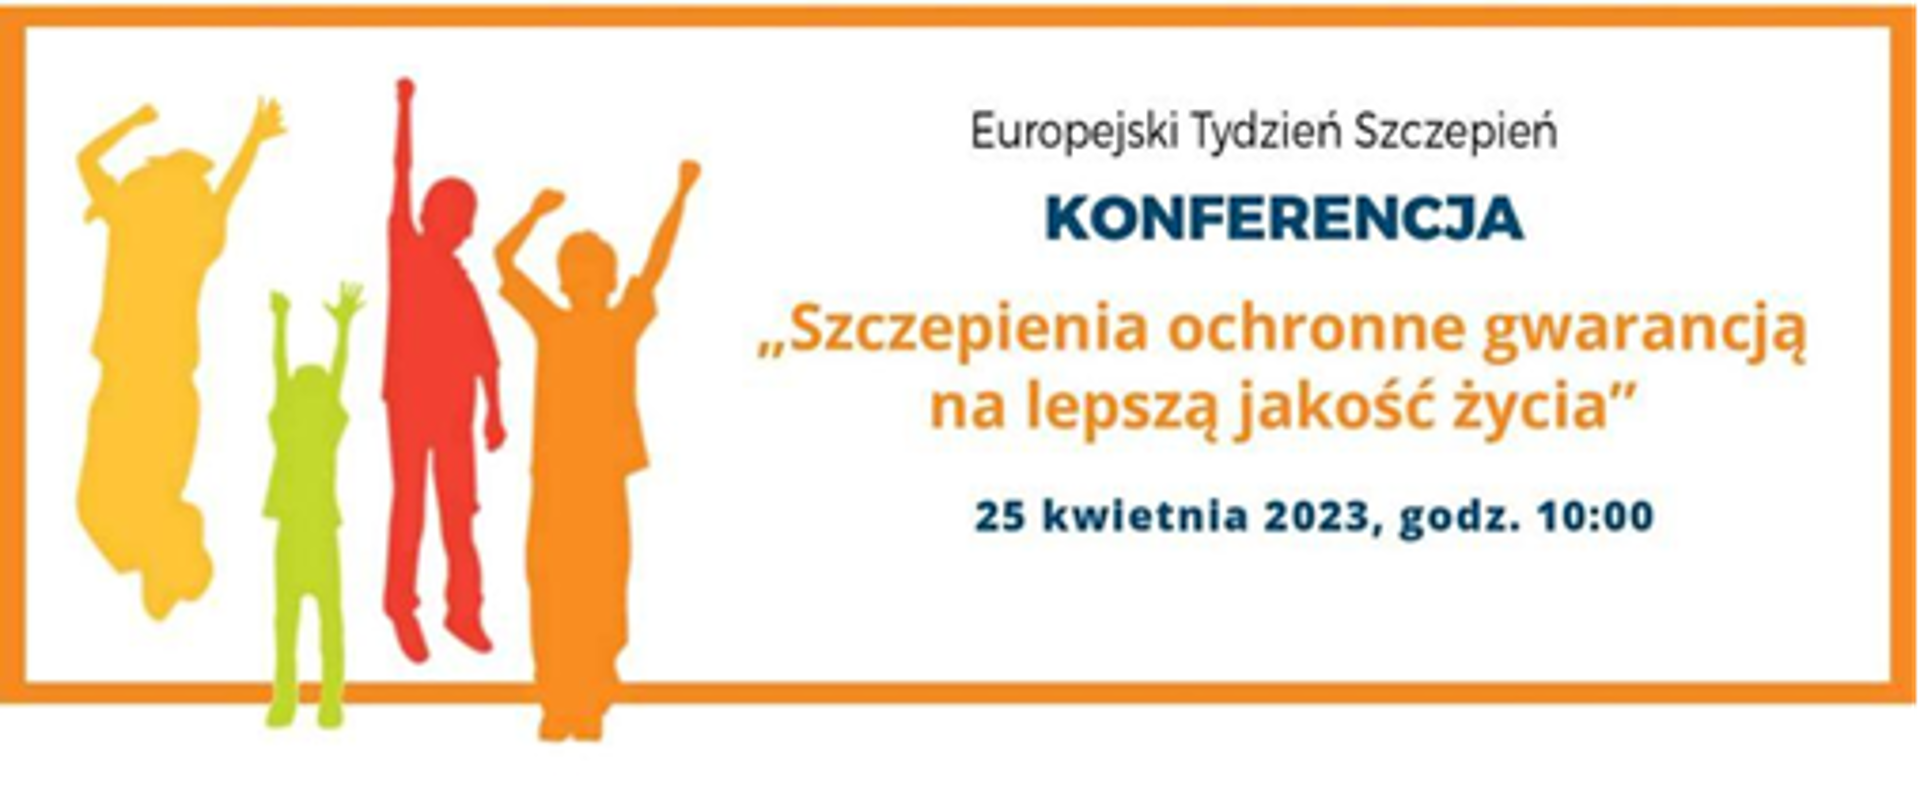 Europejski Tydzień Szczepień KONFERENCJA "Szczepienia ochronne gwarnacją na lepszą jakość życia" 25 kwietnia 2023, godz. 10:00